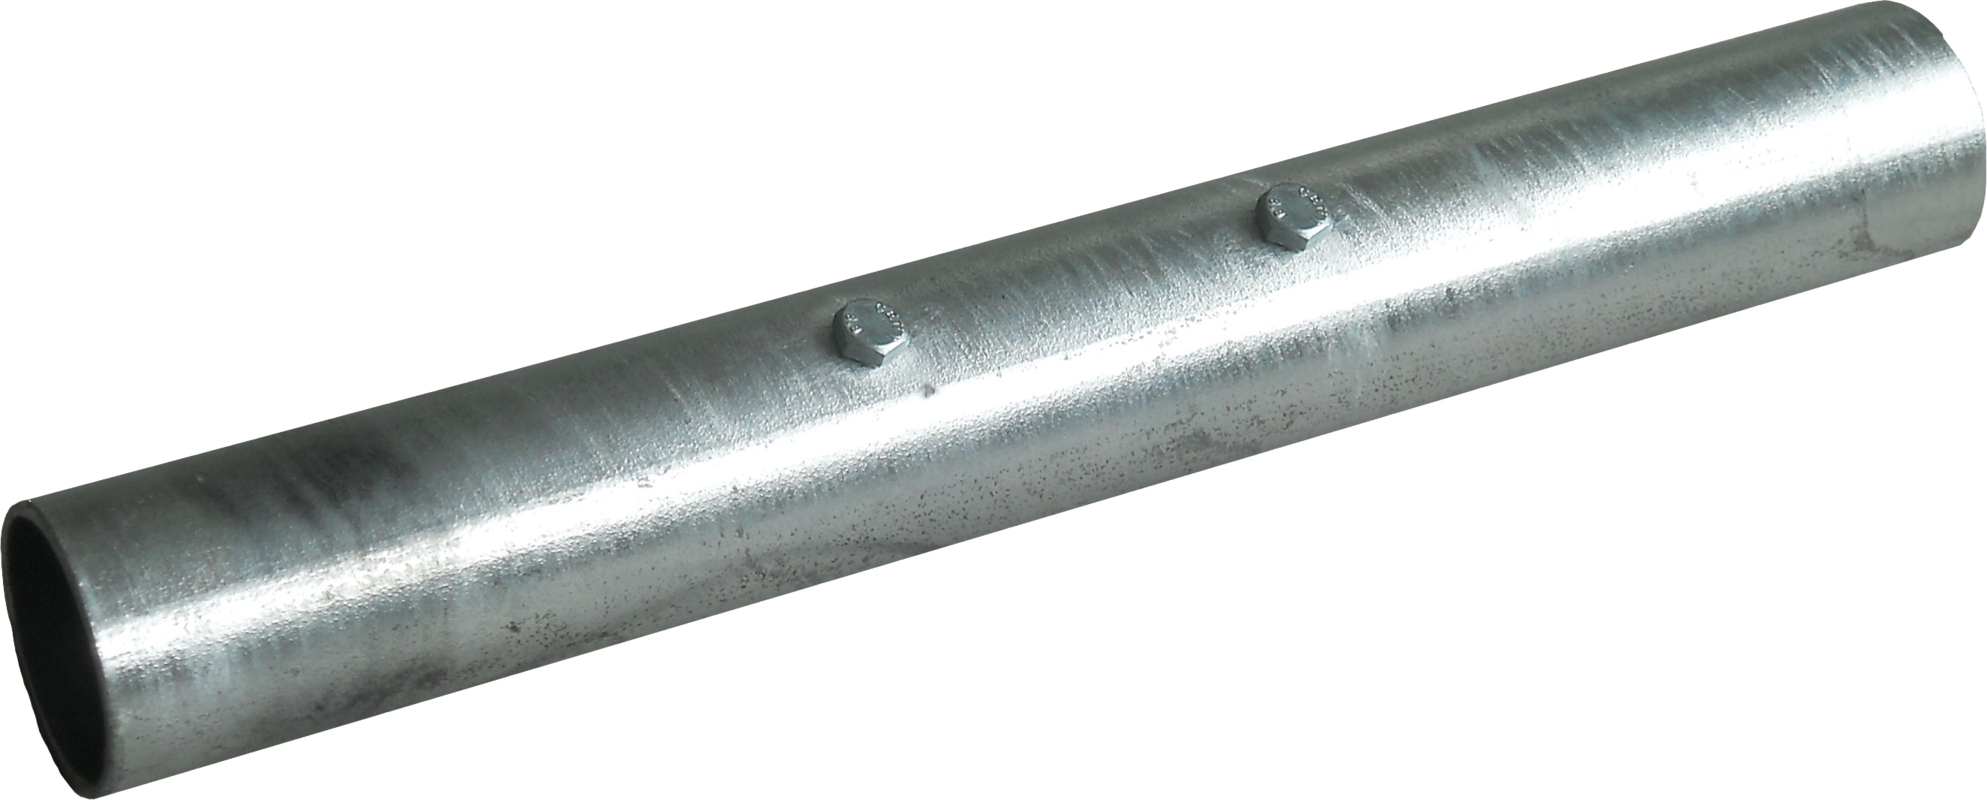 Verbindungsrohr 400x70mm für Liegeboxenbügel Universal inkl.2 Schrauben M12x85,2Muttern M12